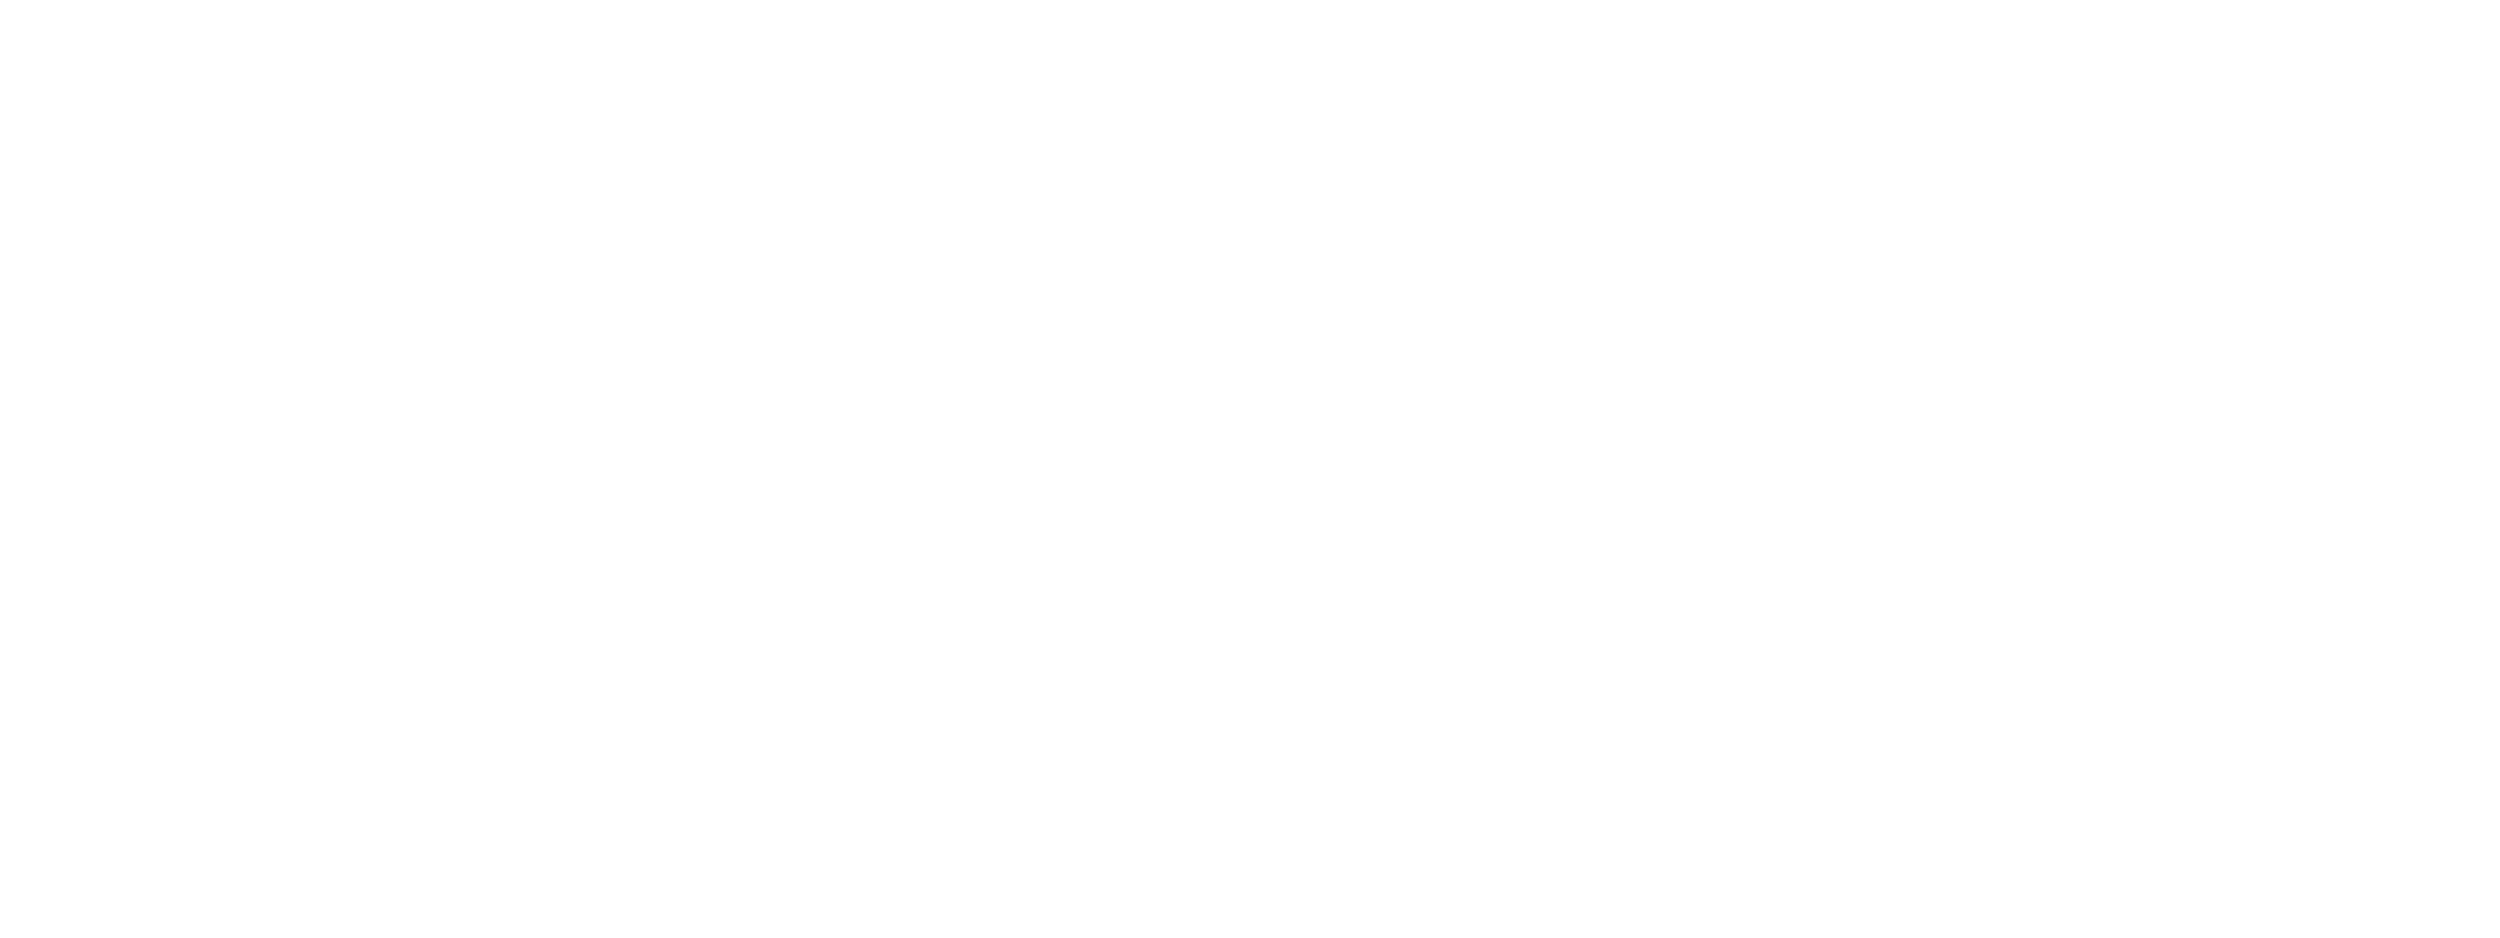 Smart Dubai IOT